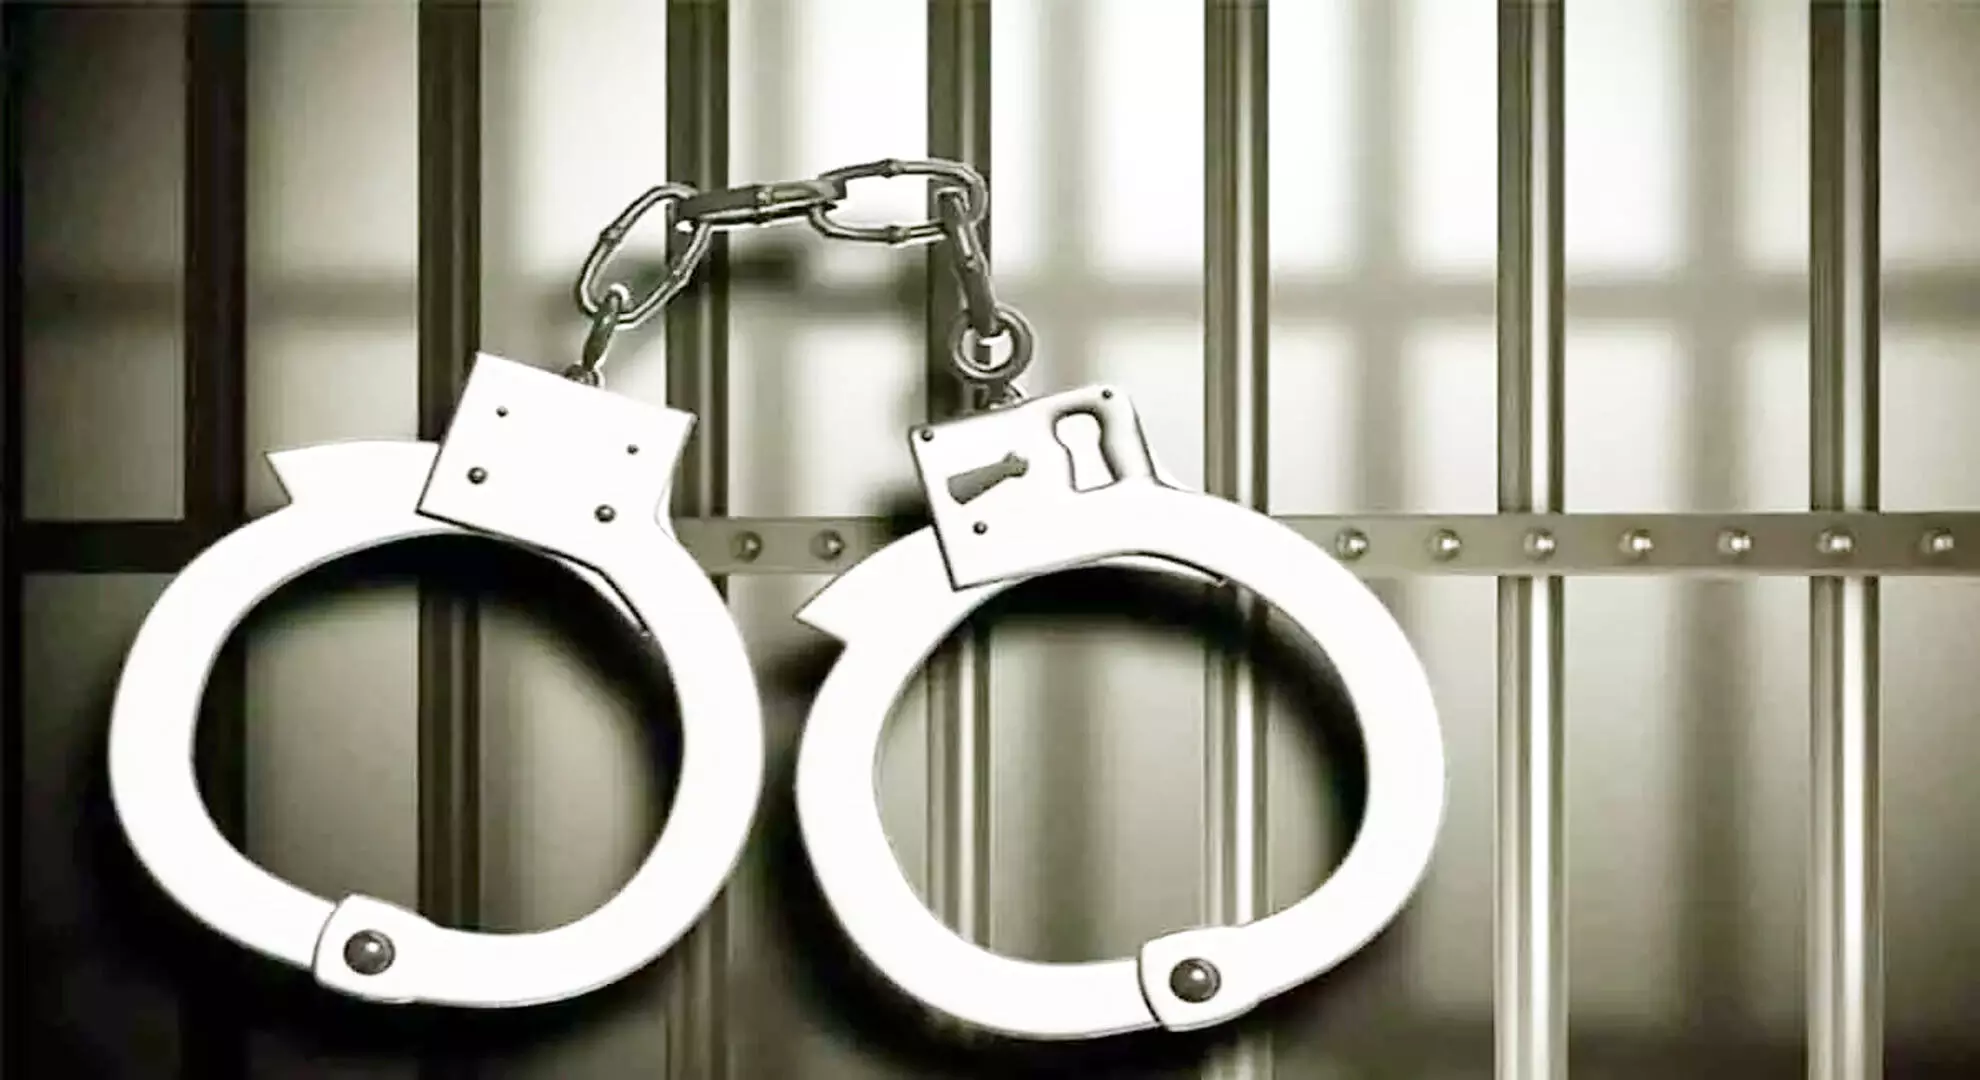 विजयवाड़ा: तीन बाइक चोरी करने के आरोप में व्यक्ति को 200 दिन की जेल की सजा सुनाई गई